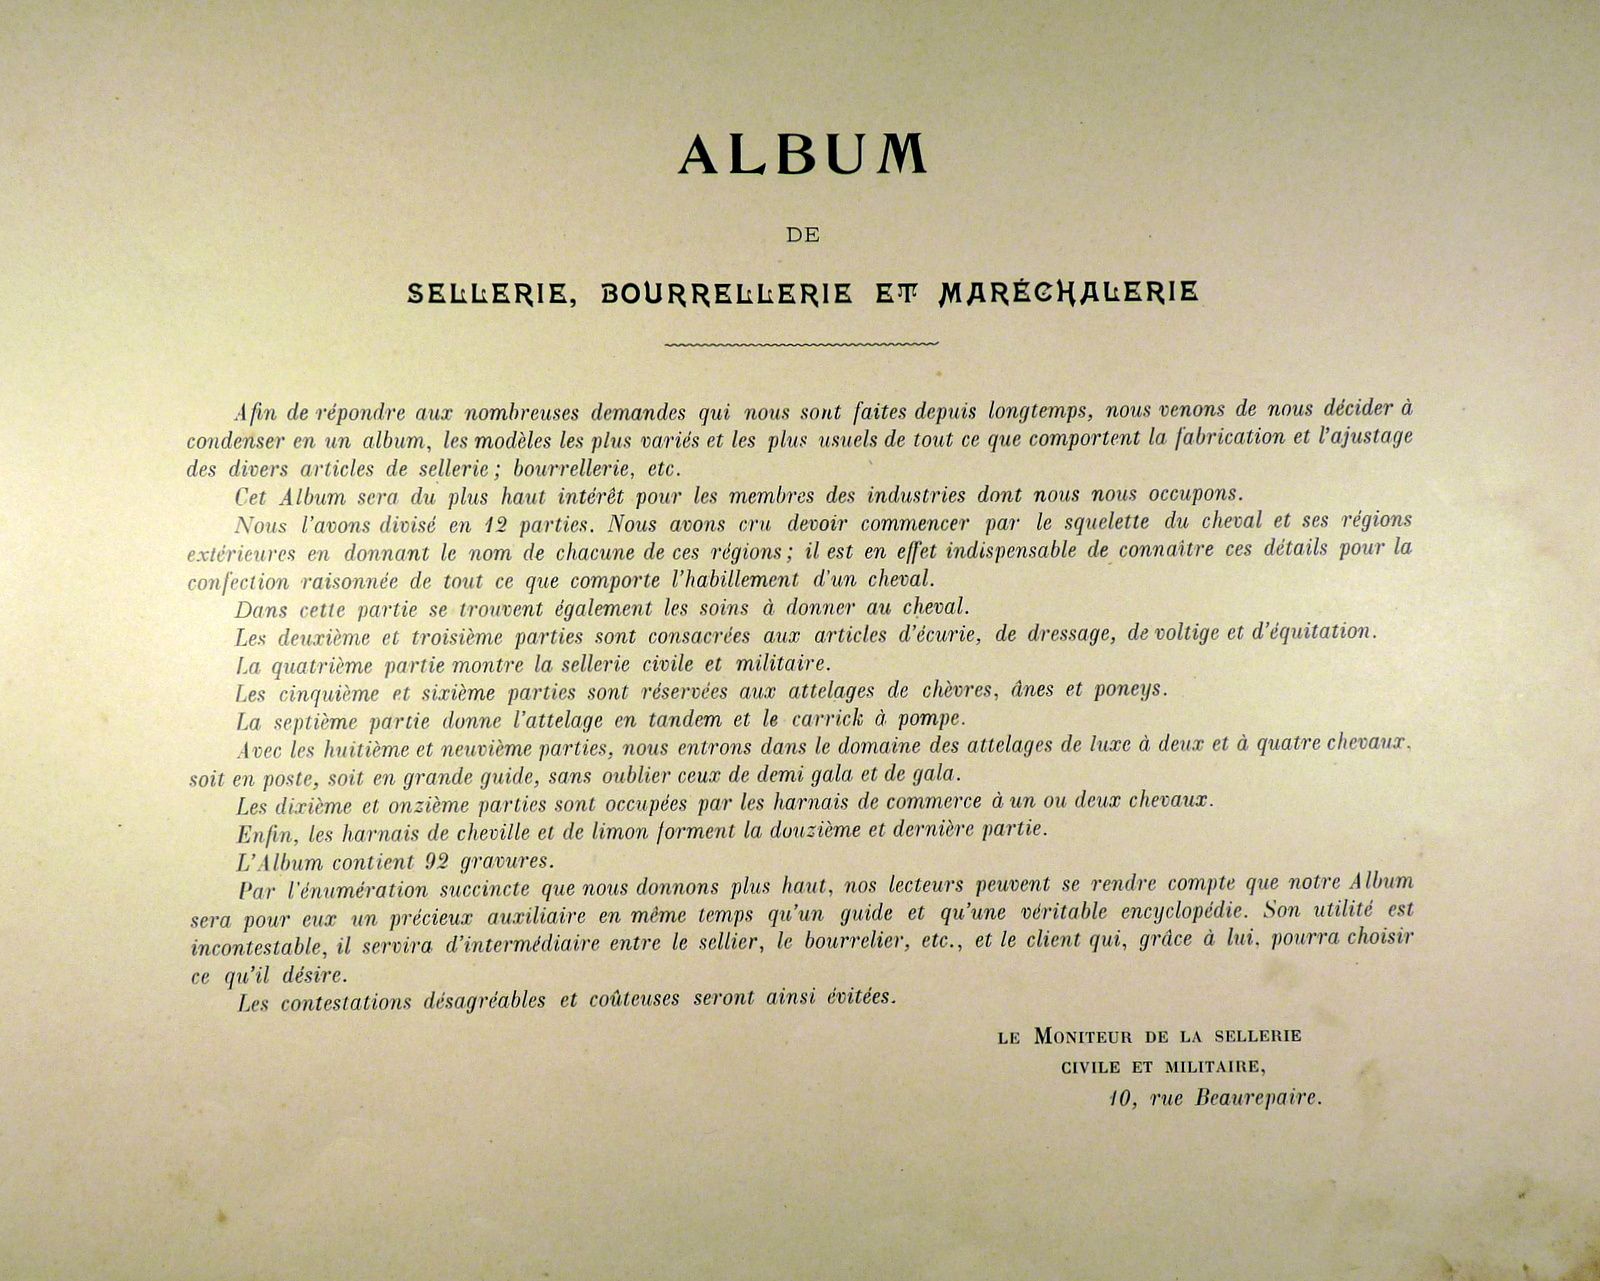 Album de la sellerie française 1900.